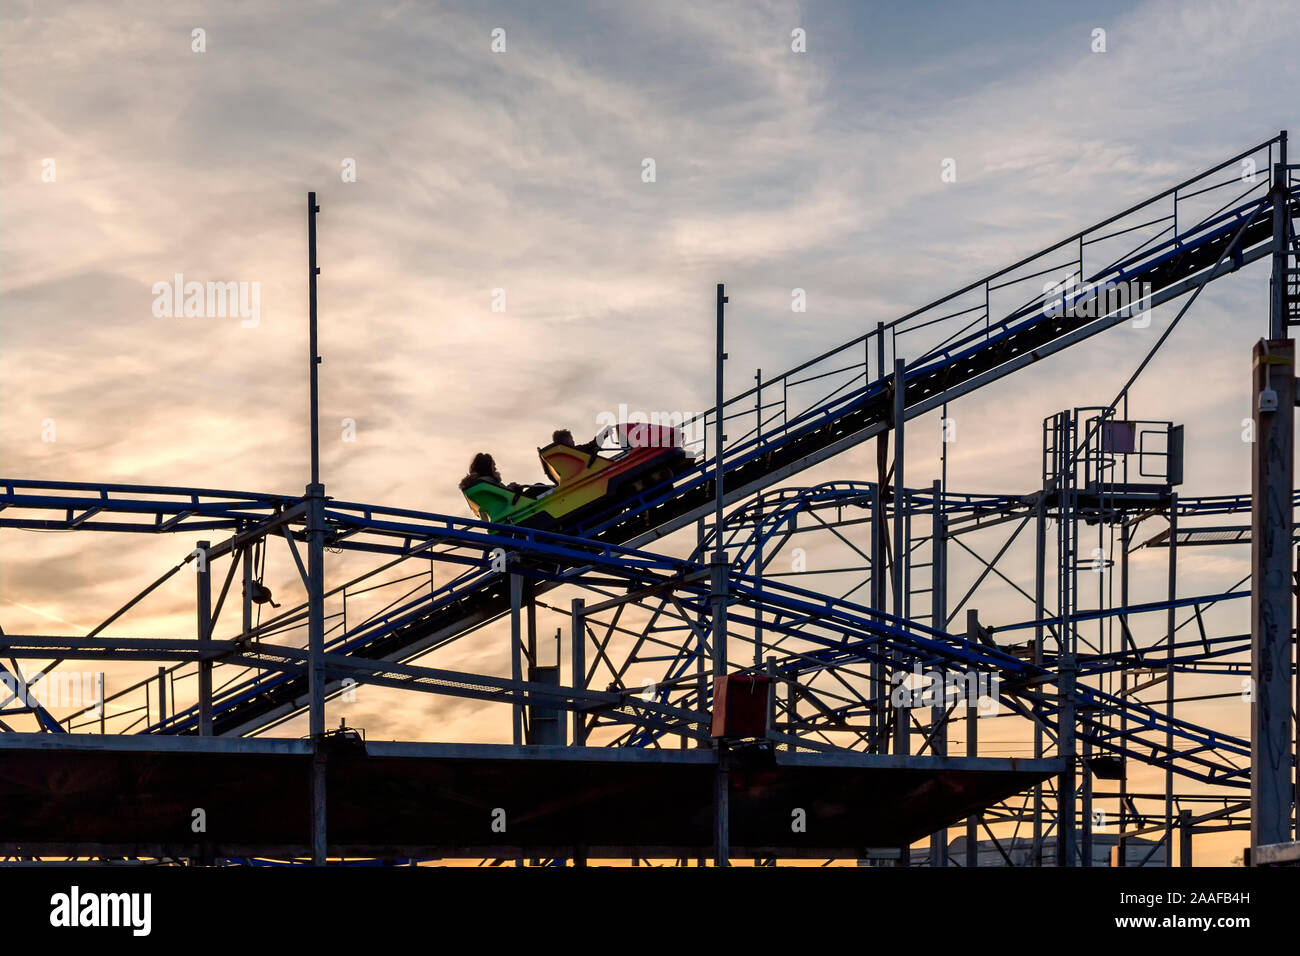 Un roller coaster gravit une pente raide alors que riders tenir la barre de sécurité en prévision de l'automne. Situé dans un beau ciel d'or. Banque D'Images